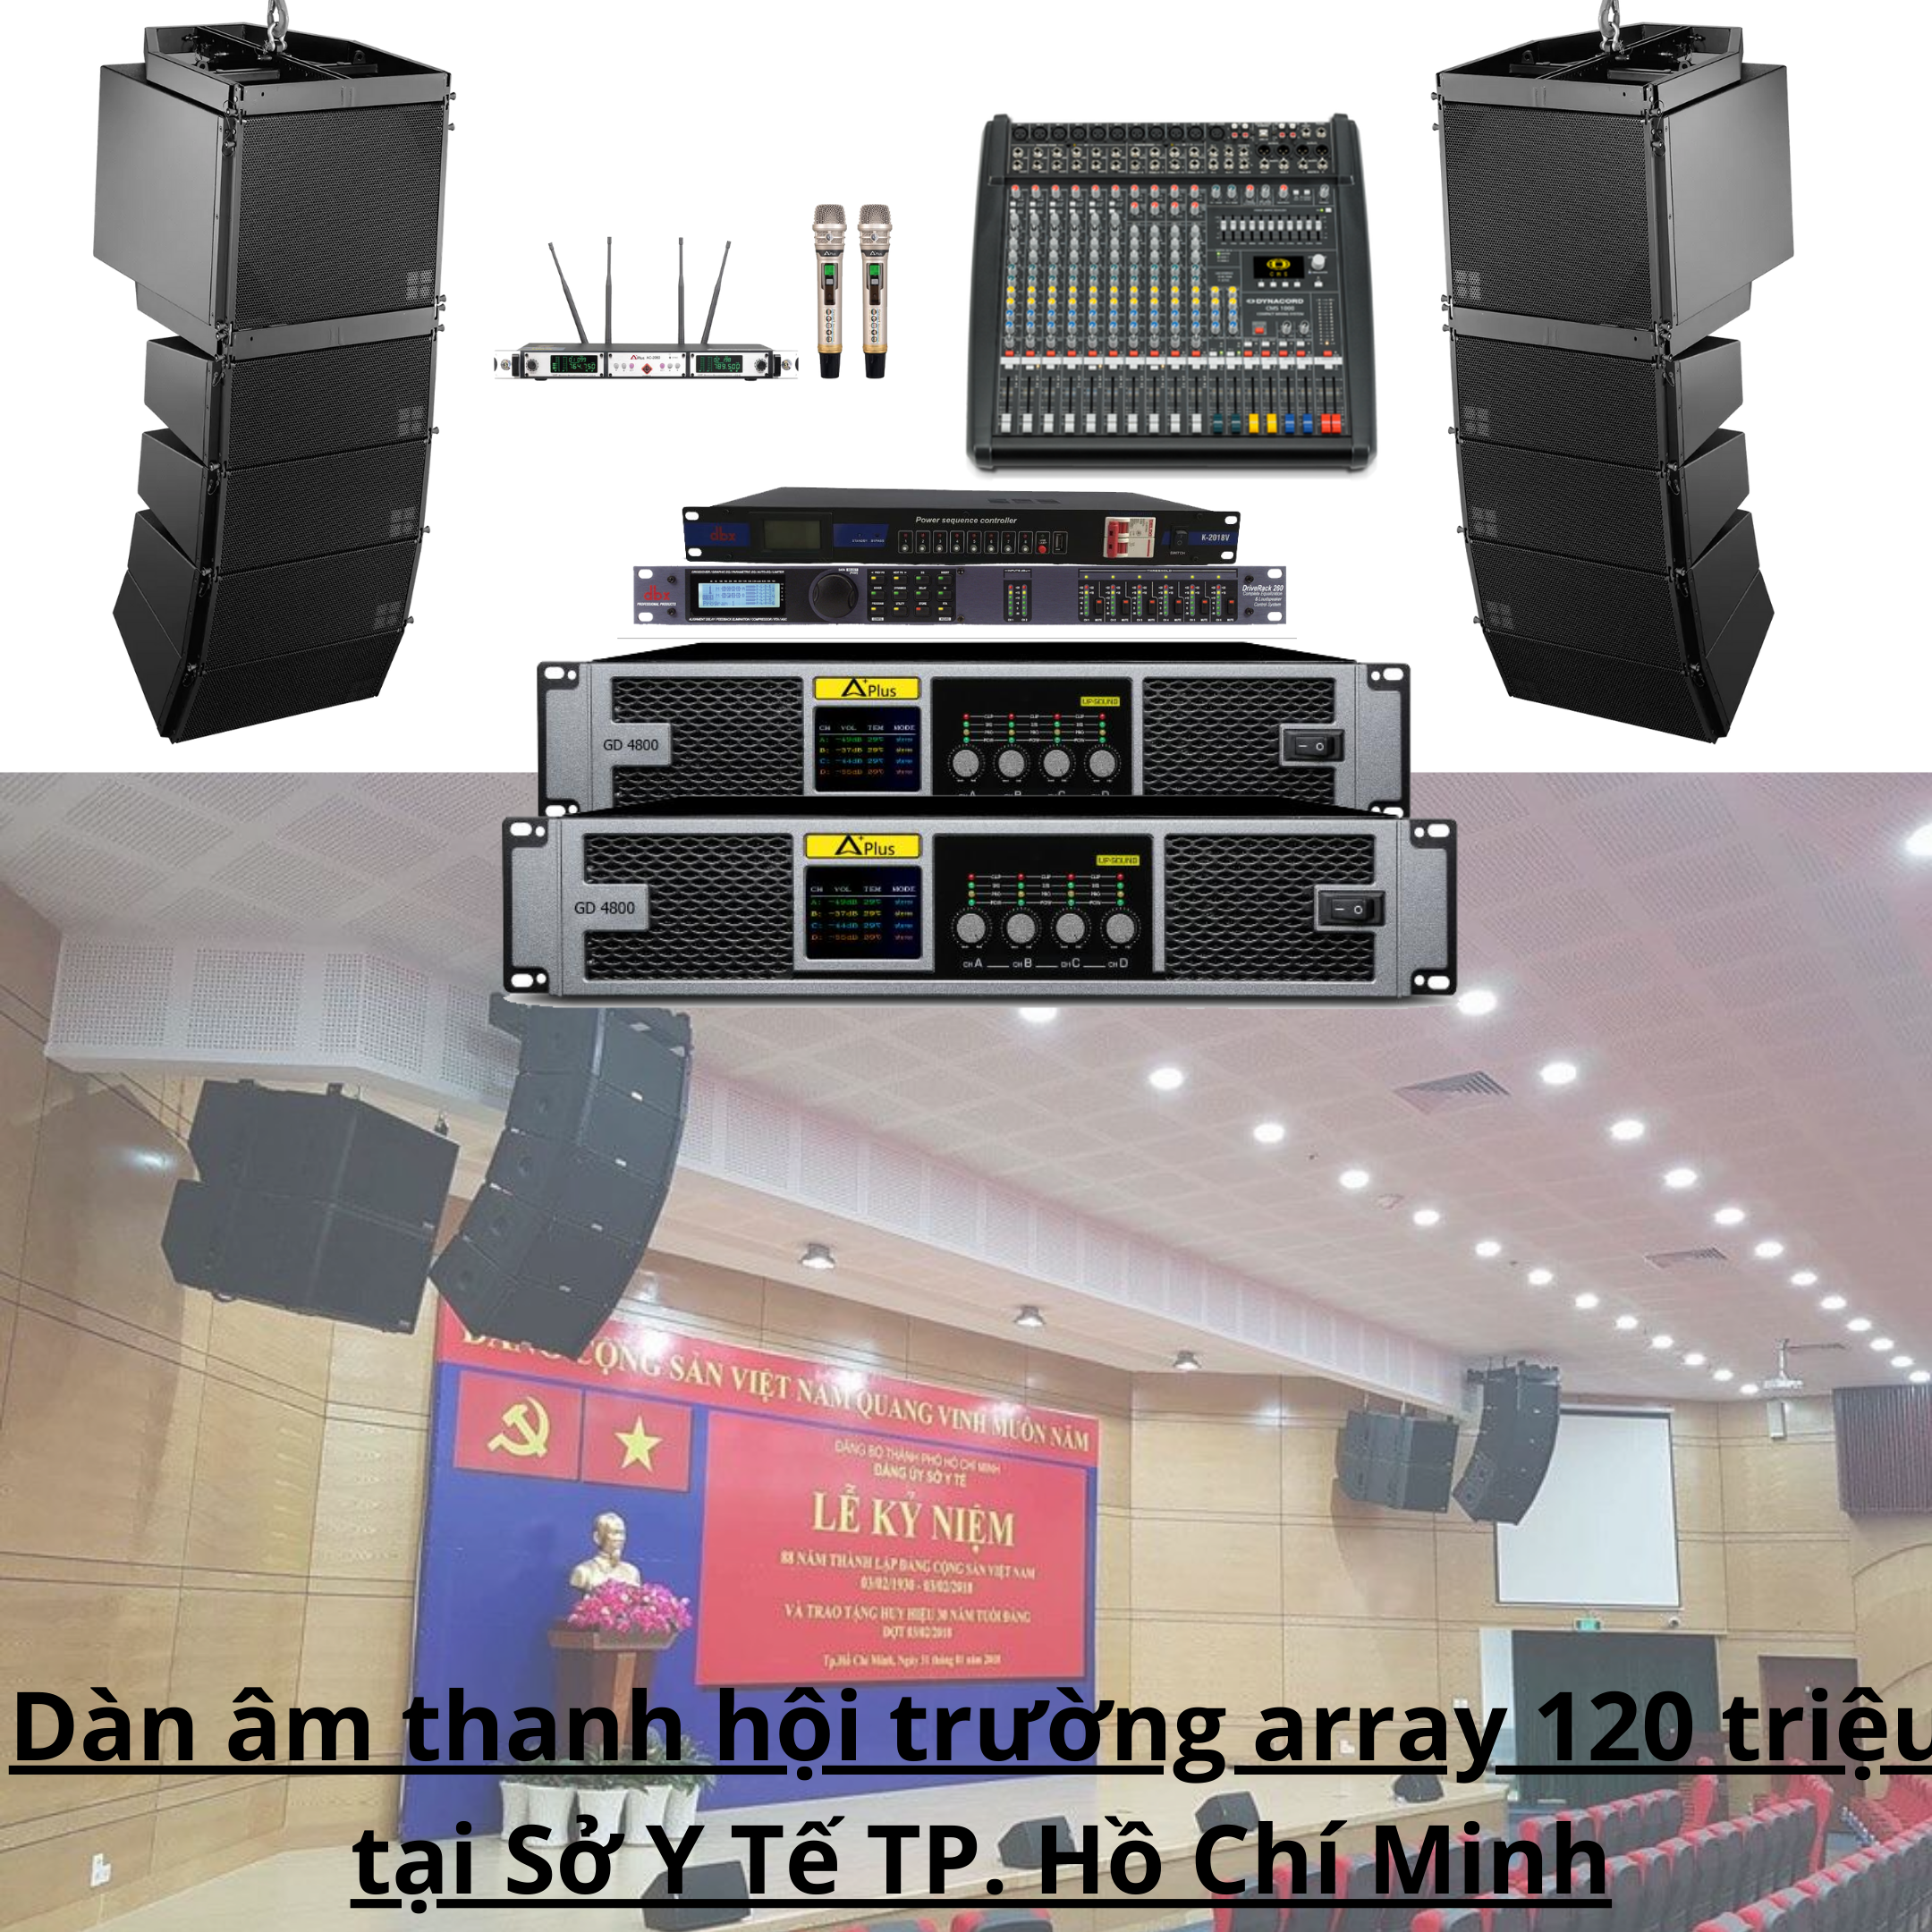 Dàn âm thanh hội trường array 120 triệu tại Sở Y Tế TP. Hồ Chí Minh